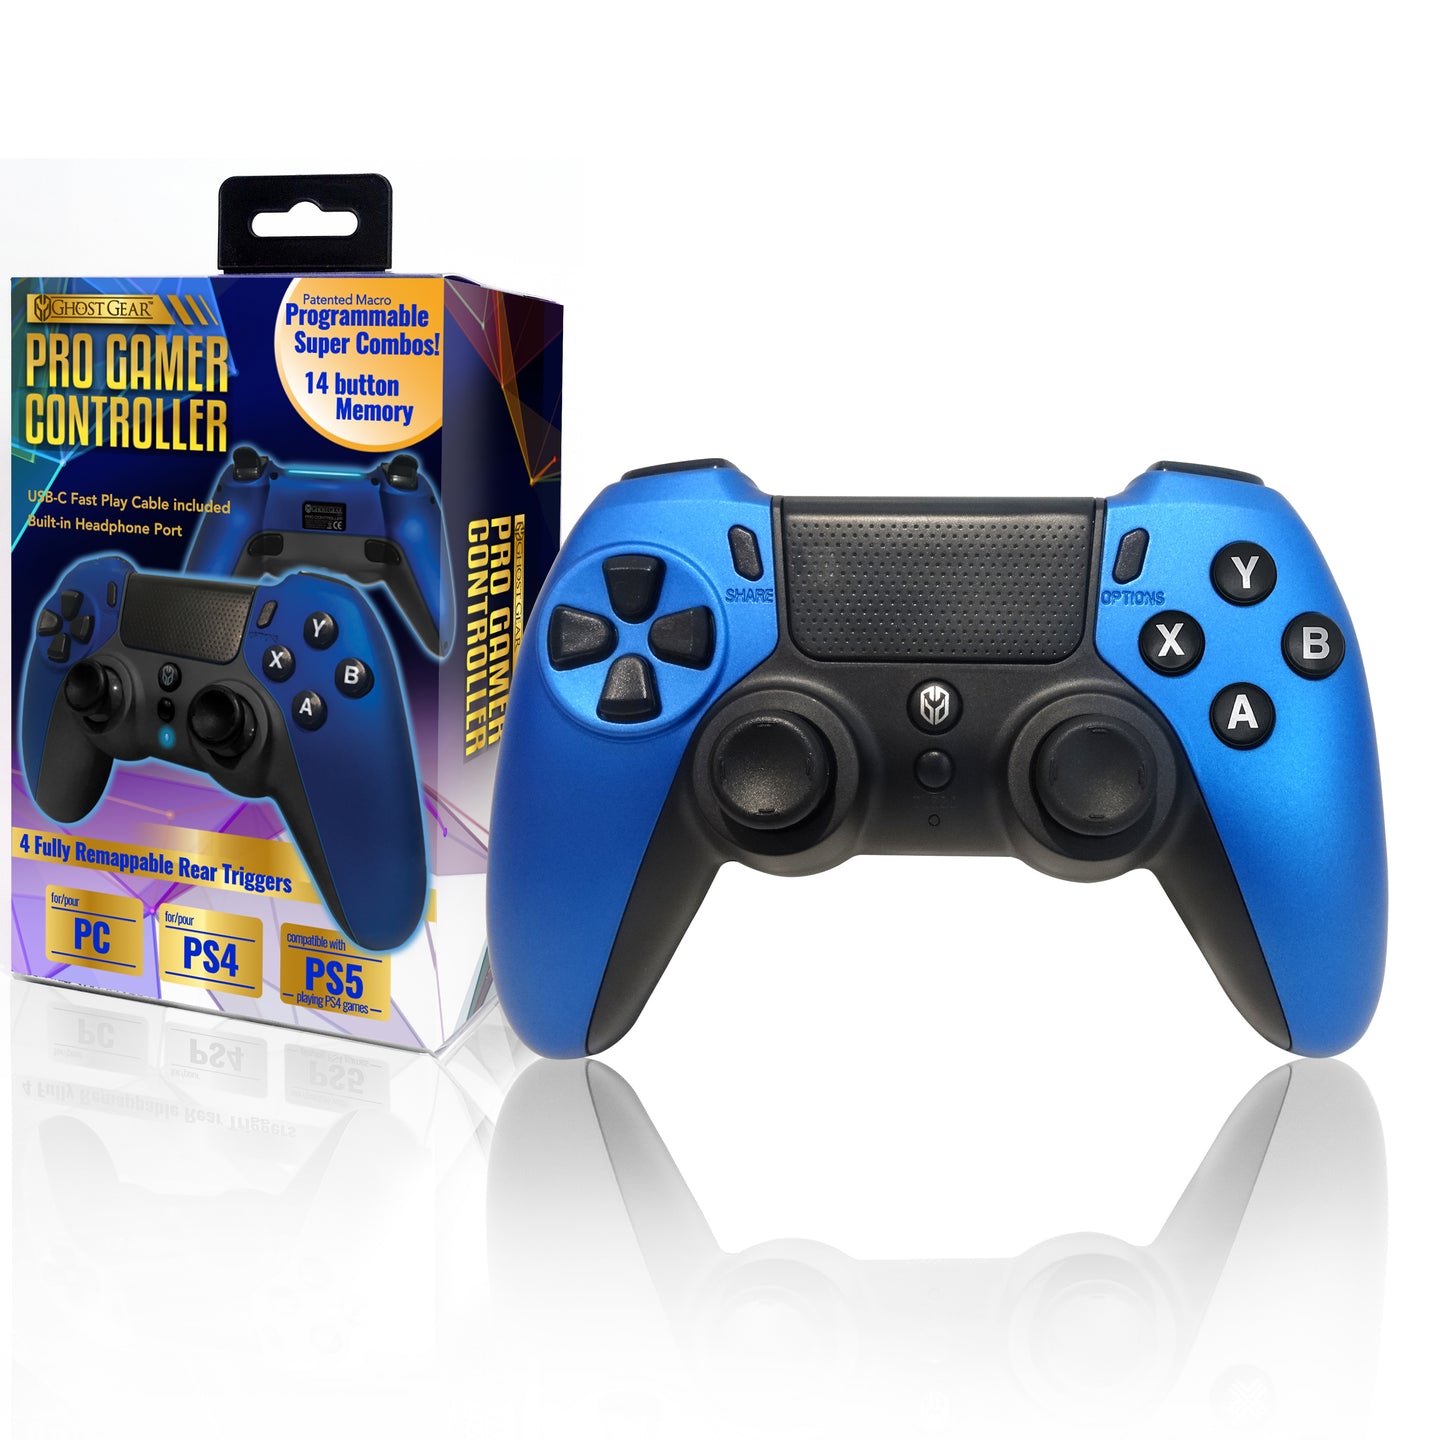 GHOST GEAR™ Pro Gamer Controller - Metallic Blue